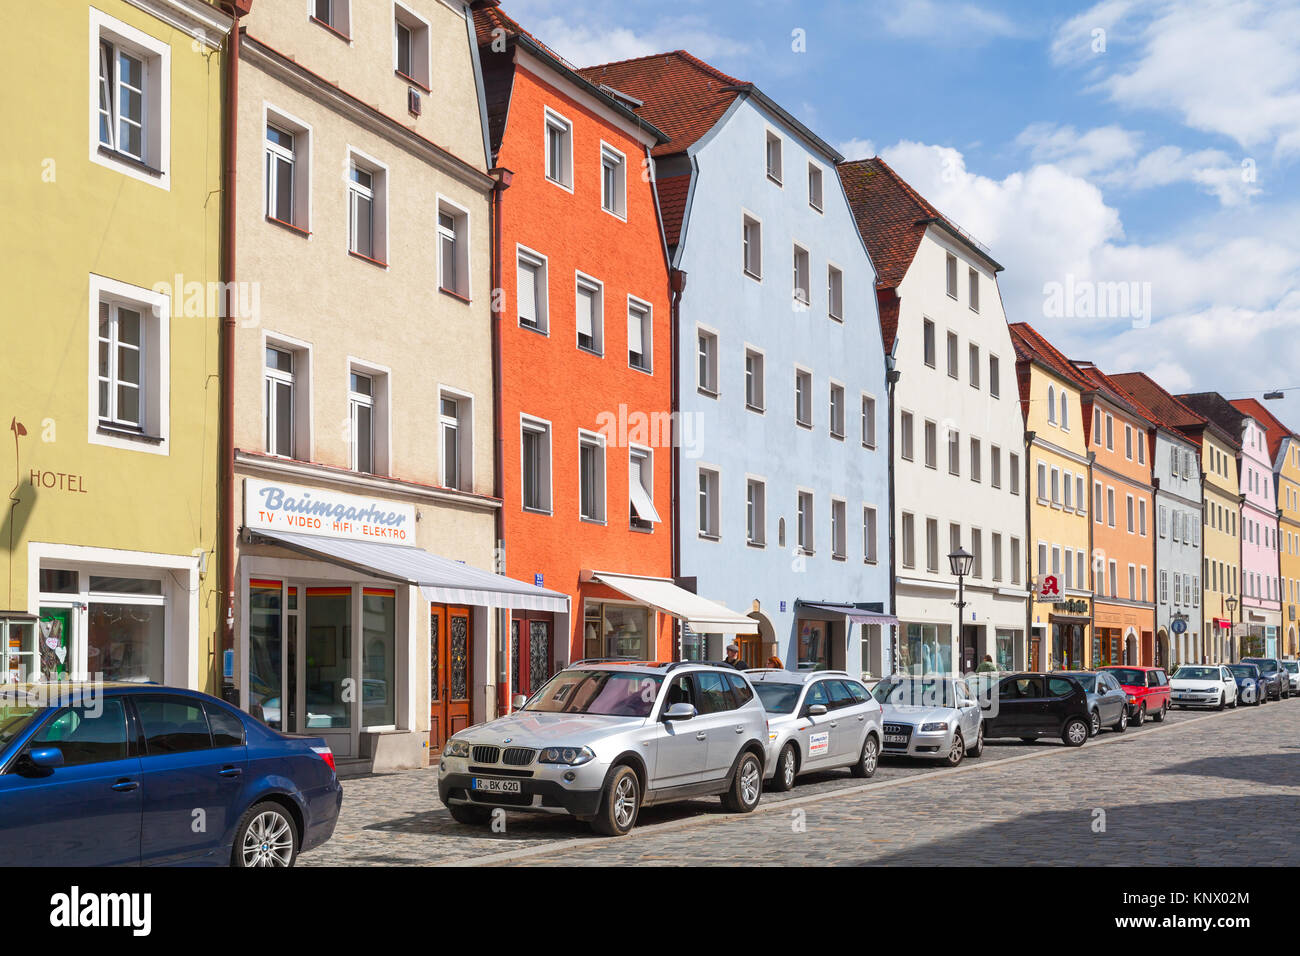 Regensburg, Alemania - 5 de mayo de 2017: la ciudad de Regensburg Street View, la gente común sobre Stadtamhof road Foto de stock